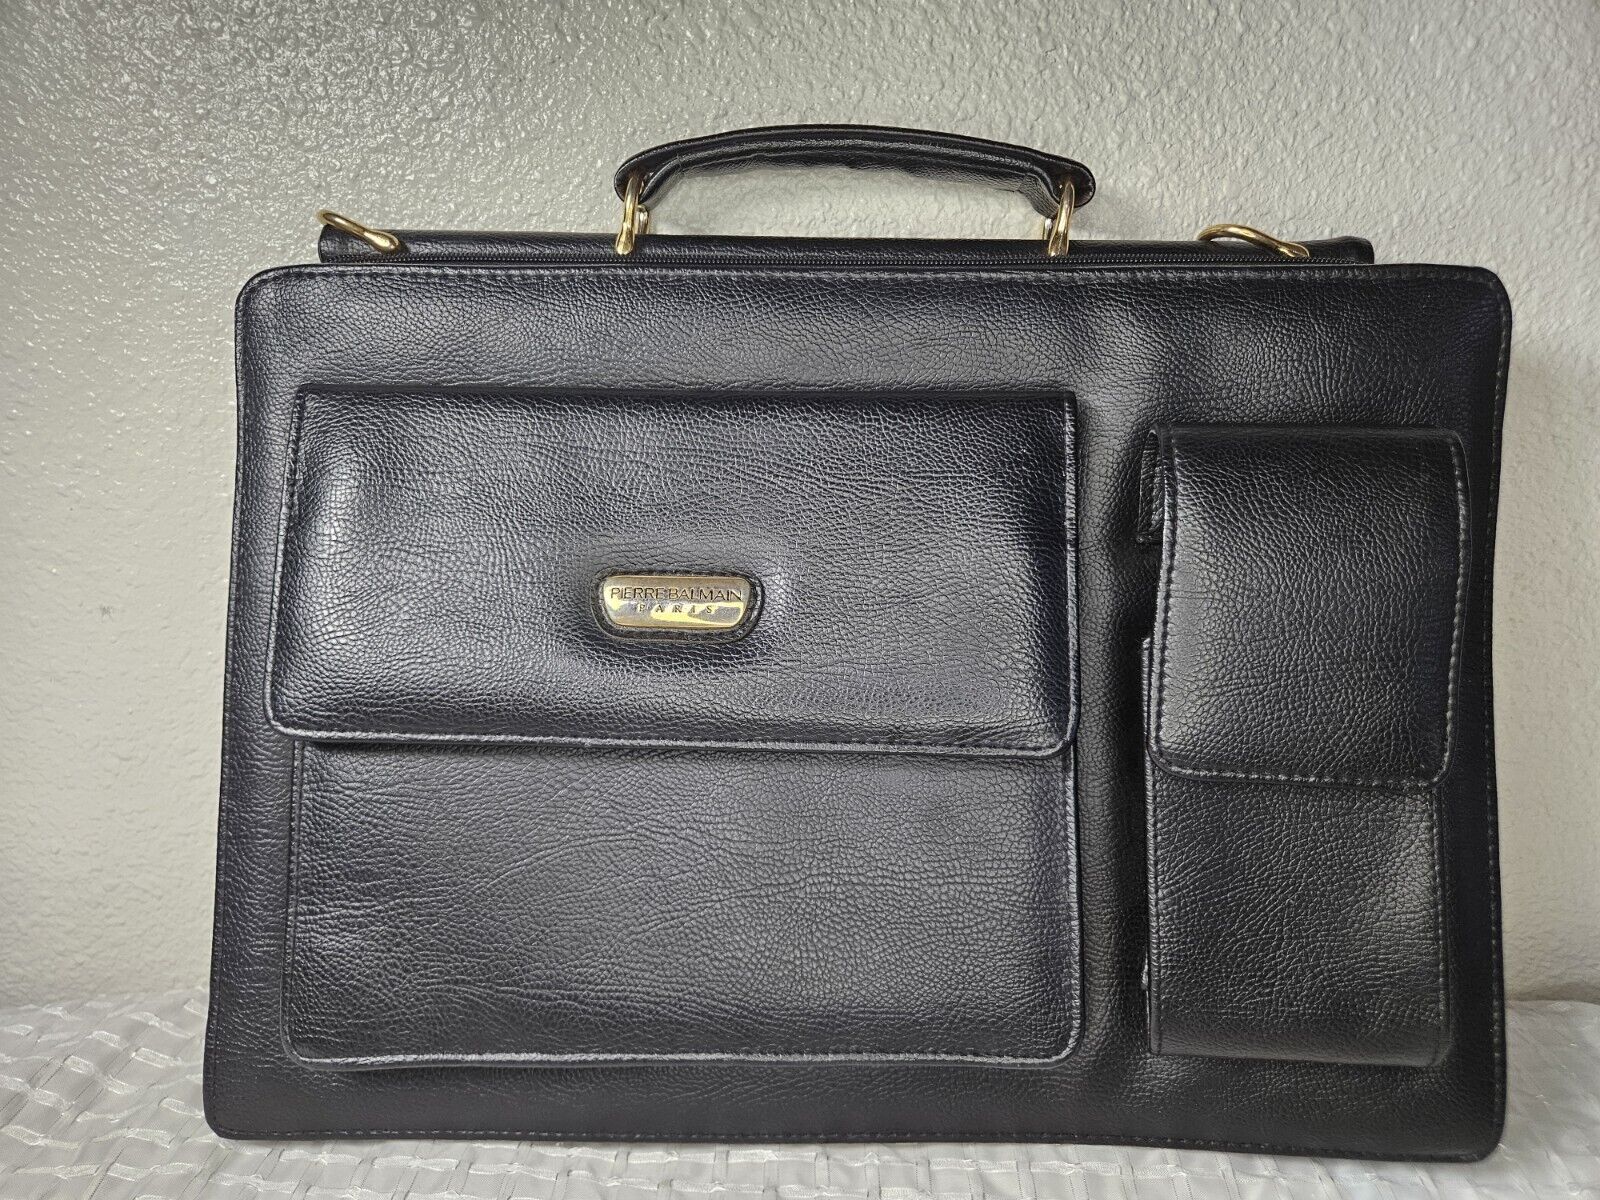 Pierre Balmain 1980's Leather Portfolio Briefcase Laptop Bag Black/Gold Vintage